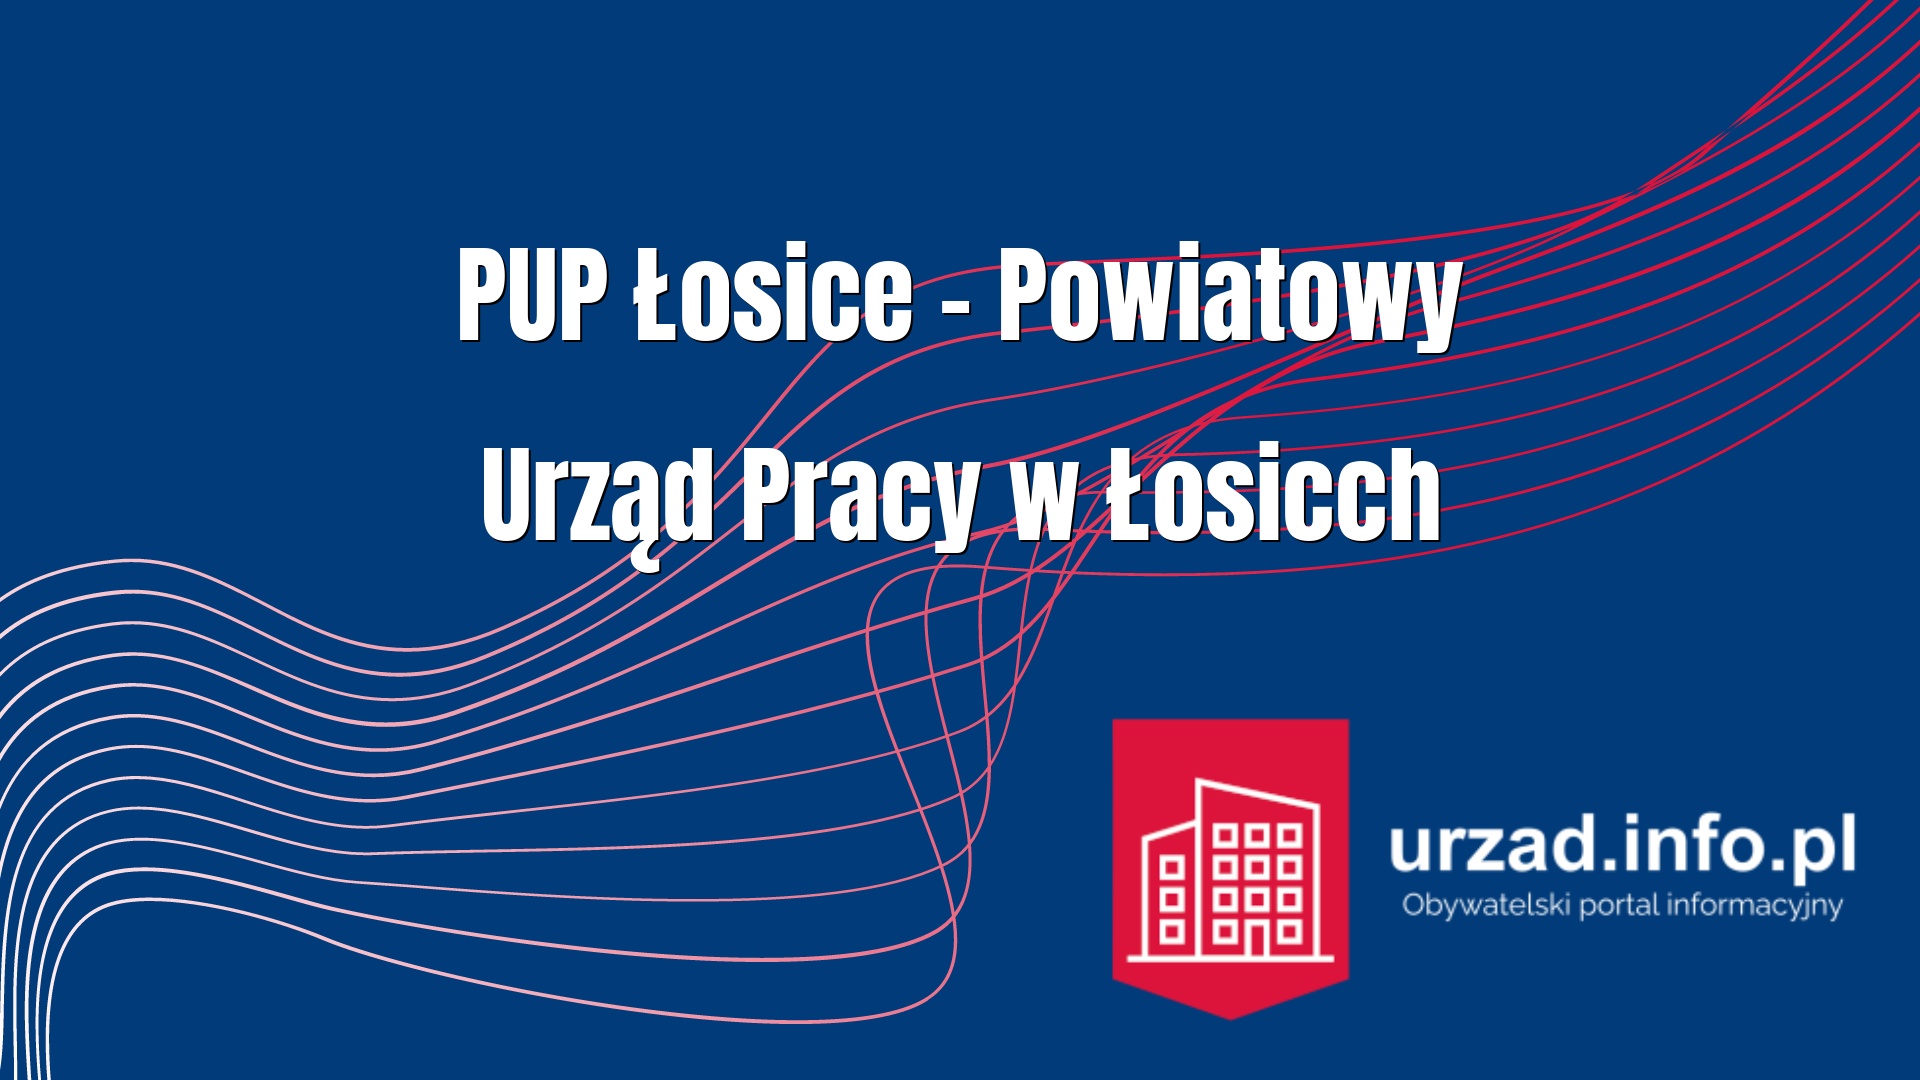 PUP Łosice – Powiatowy Urząd Pracy w Łosicch